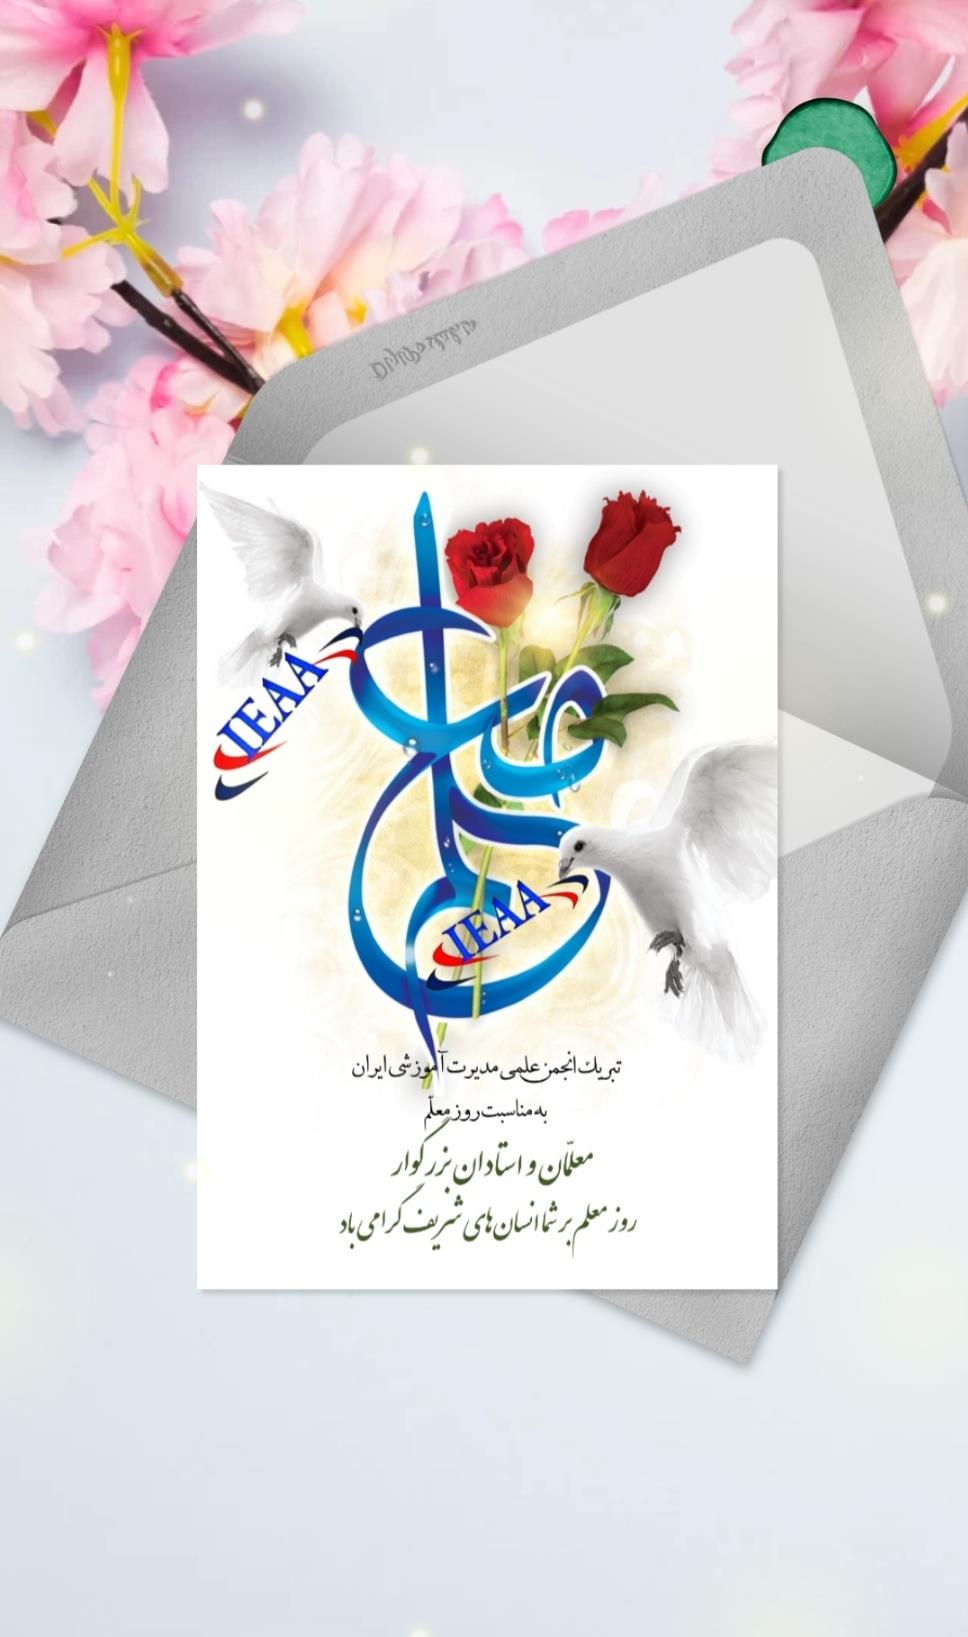 تبریک انجمن علمی مديريت آموزشی ایران به مناسبت فرارسیدن روز معلّم